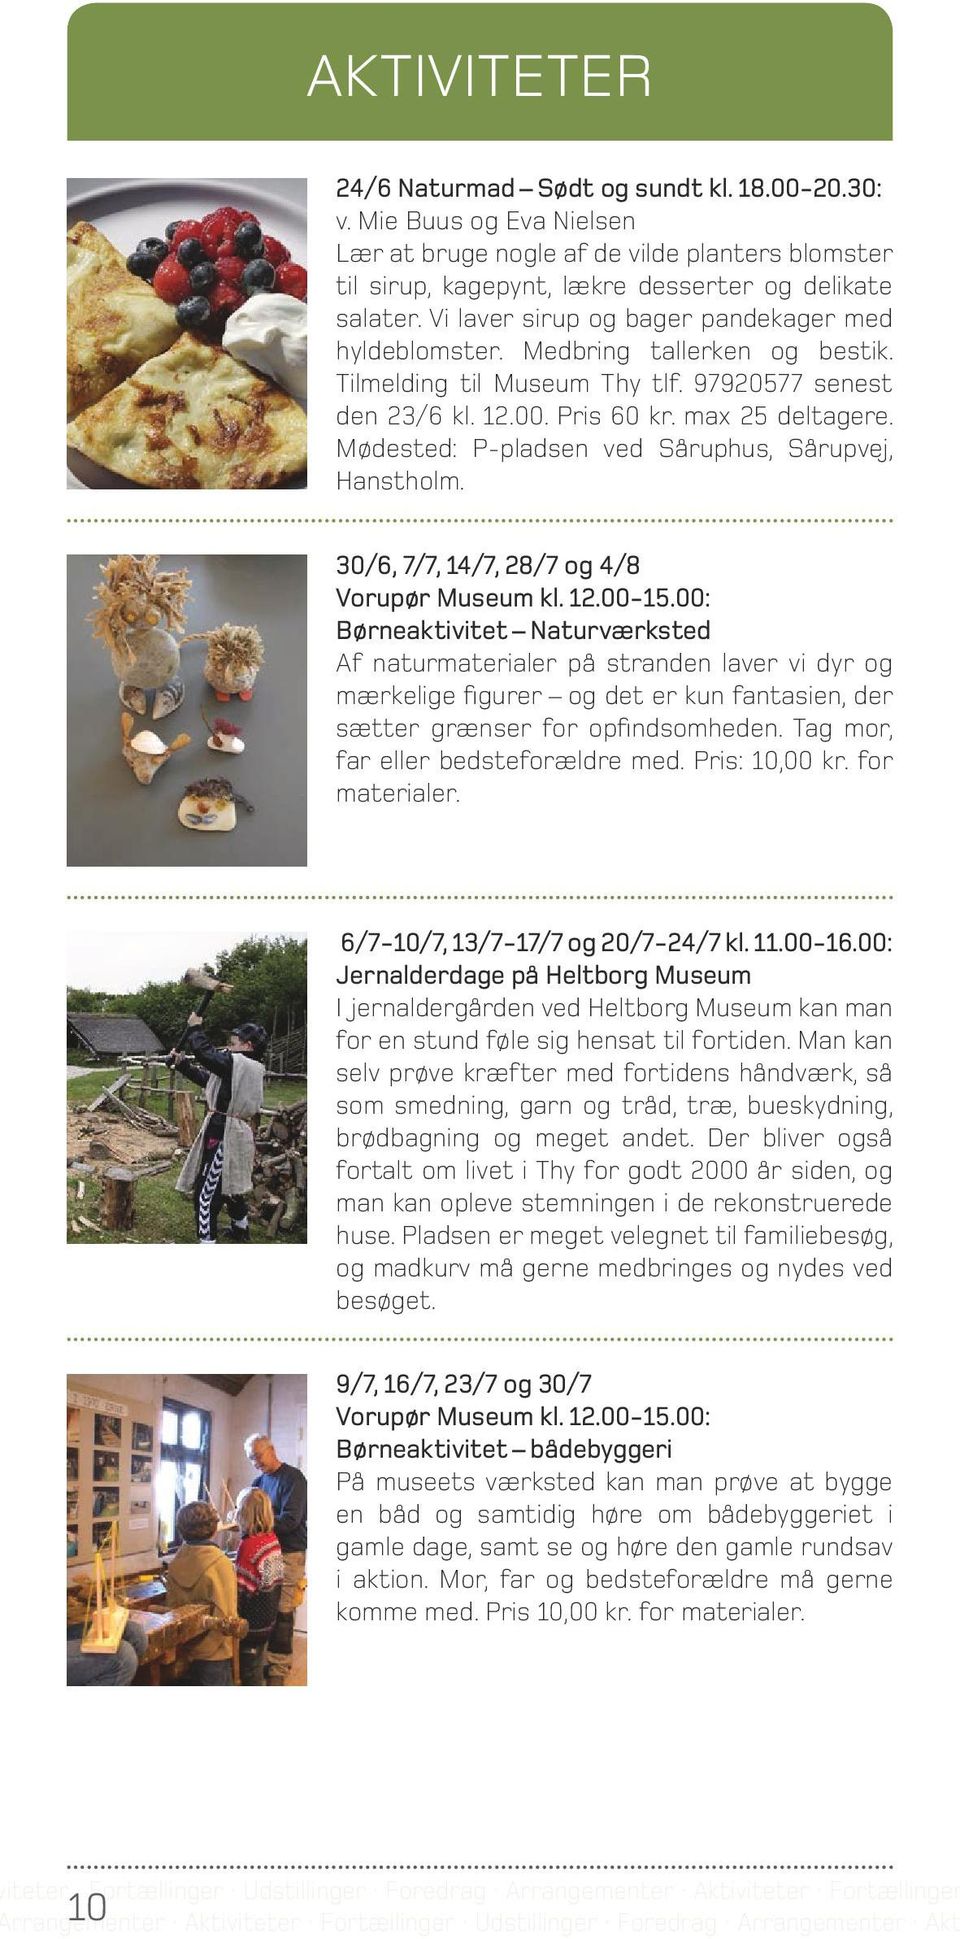 Mødested: P-pladsen ved Såruphus, Sårupvej, Hanstholm. 30/6, 7/7, 14/7, 28/7 og 4/8 Vorupør Museum kl. 12.00-15.